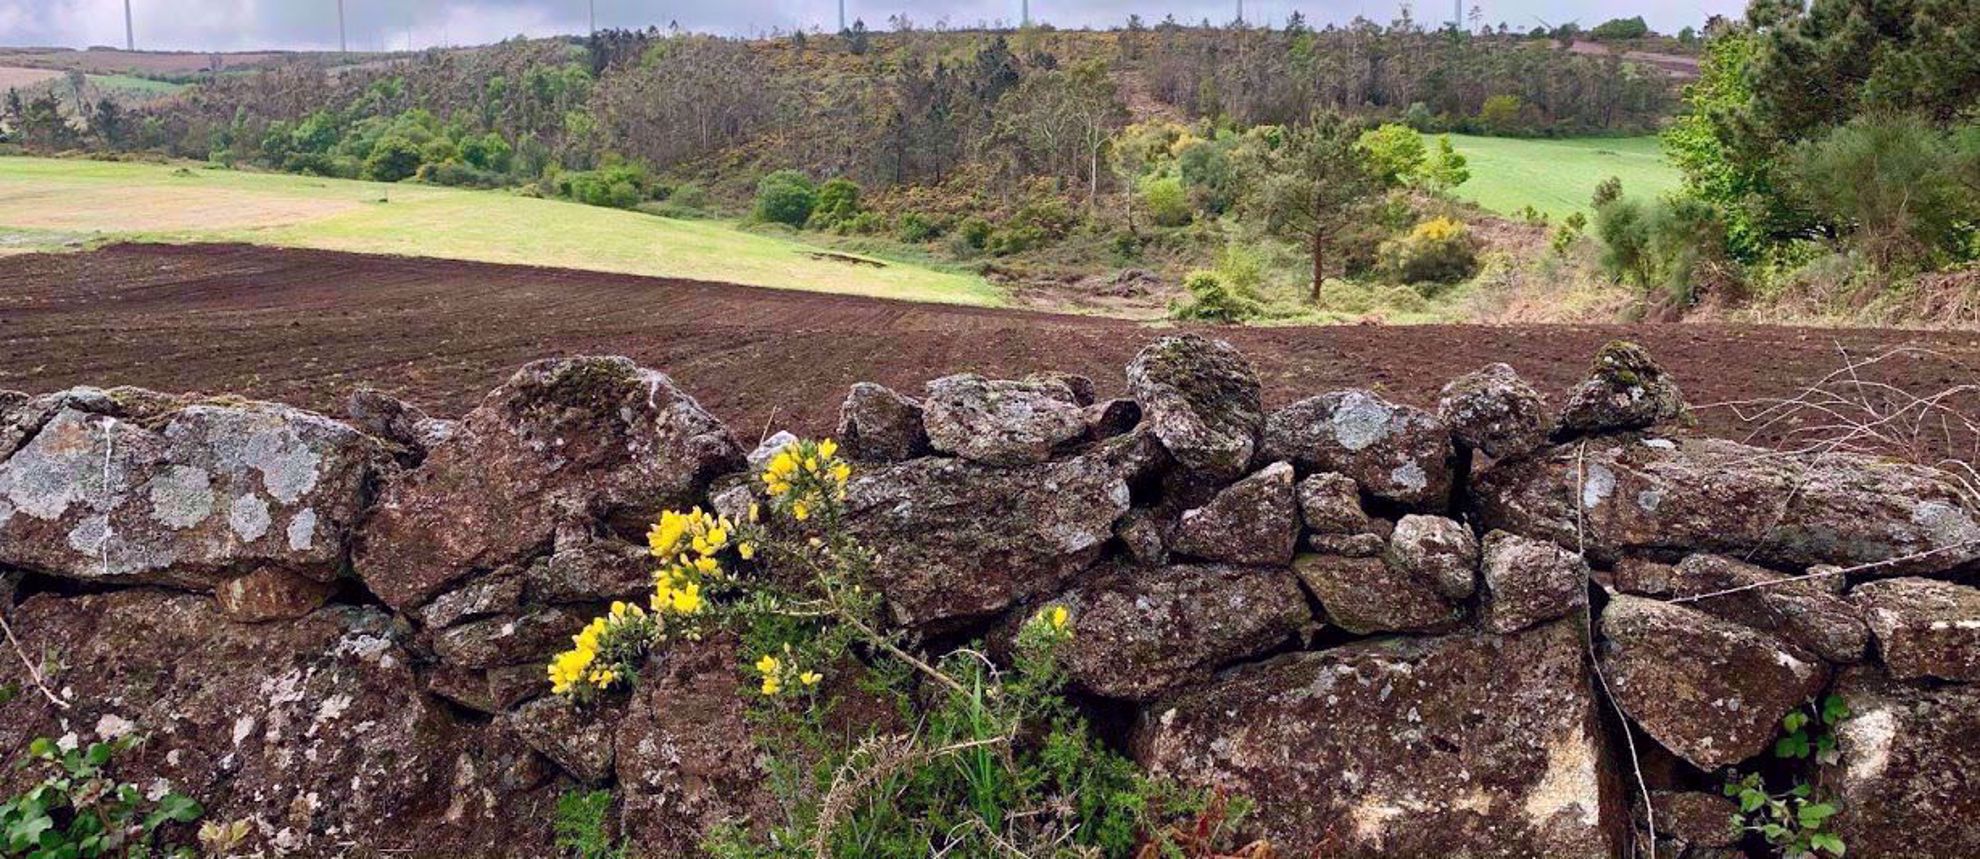 Rock wall by farmers field in Spain